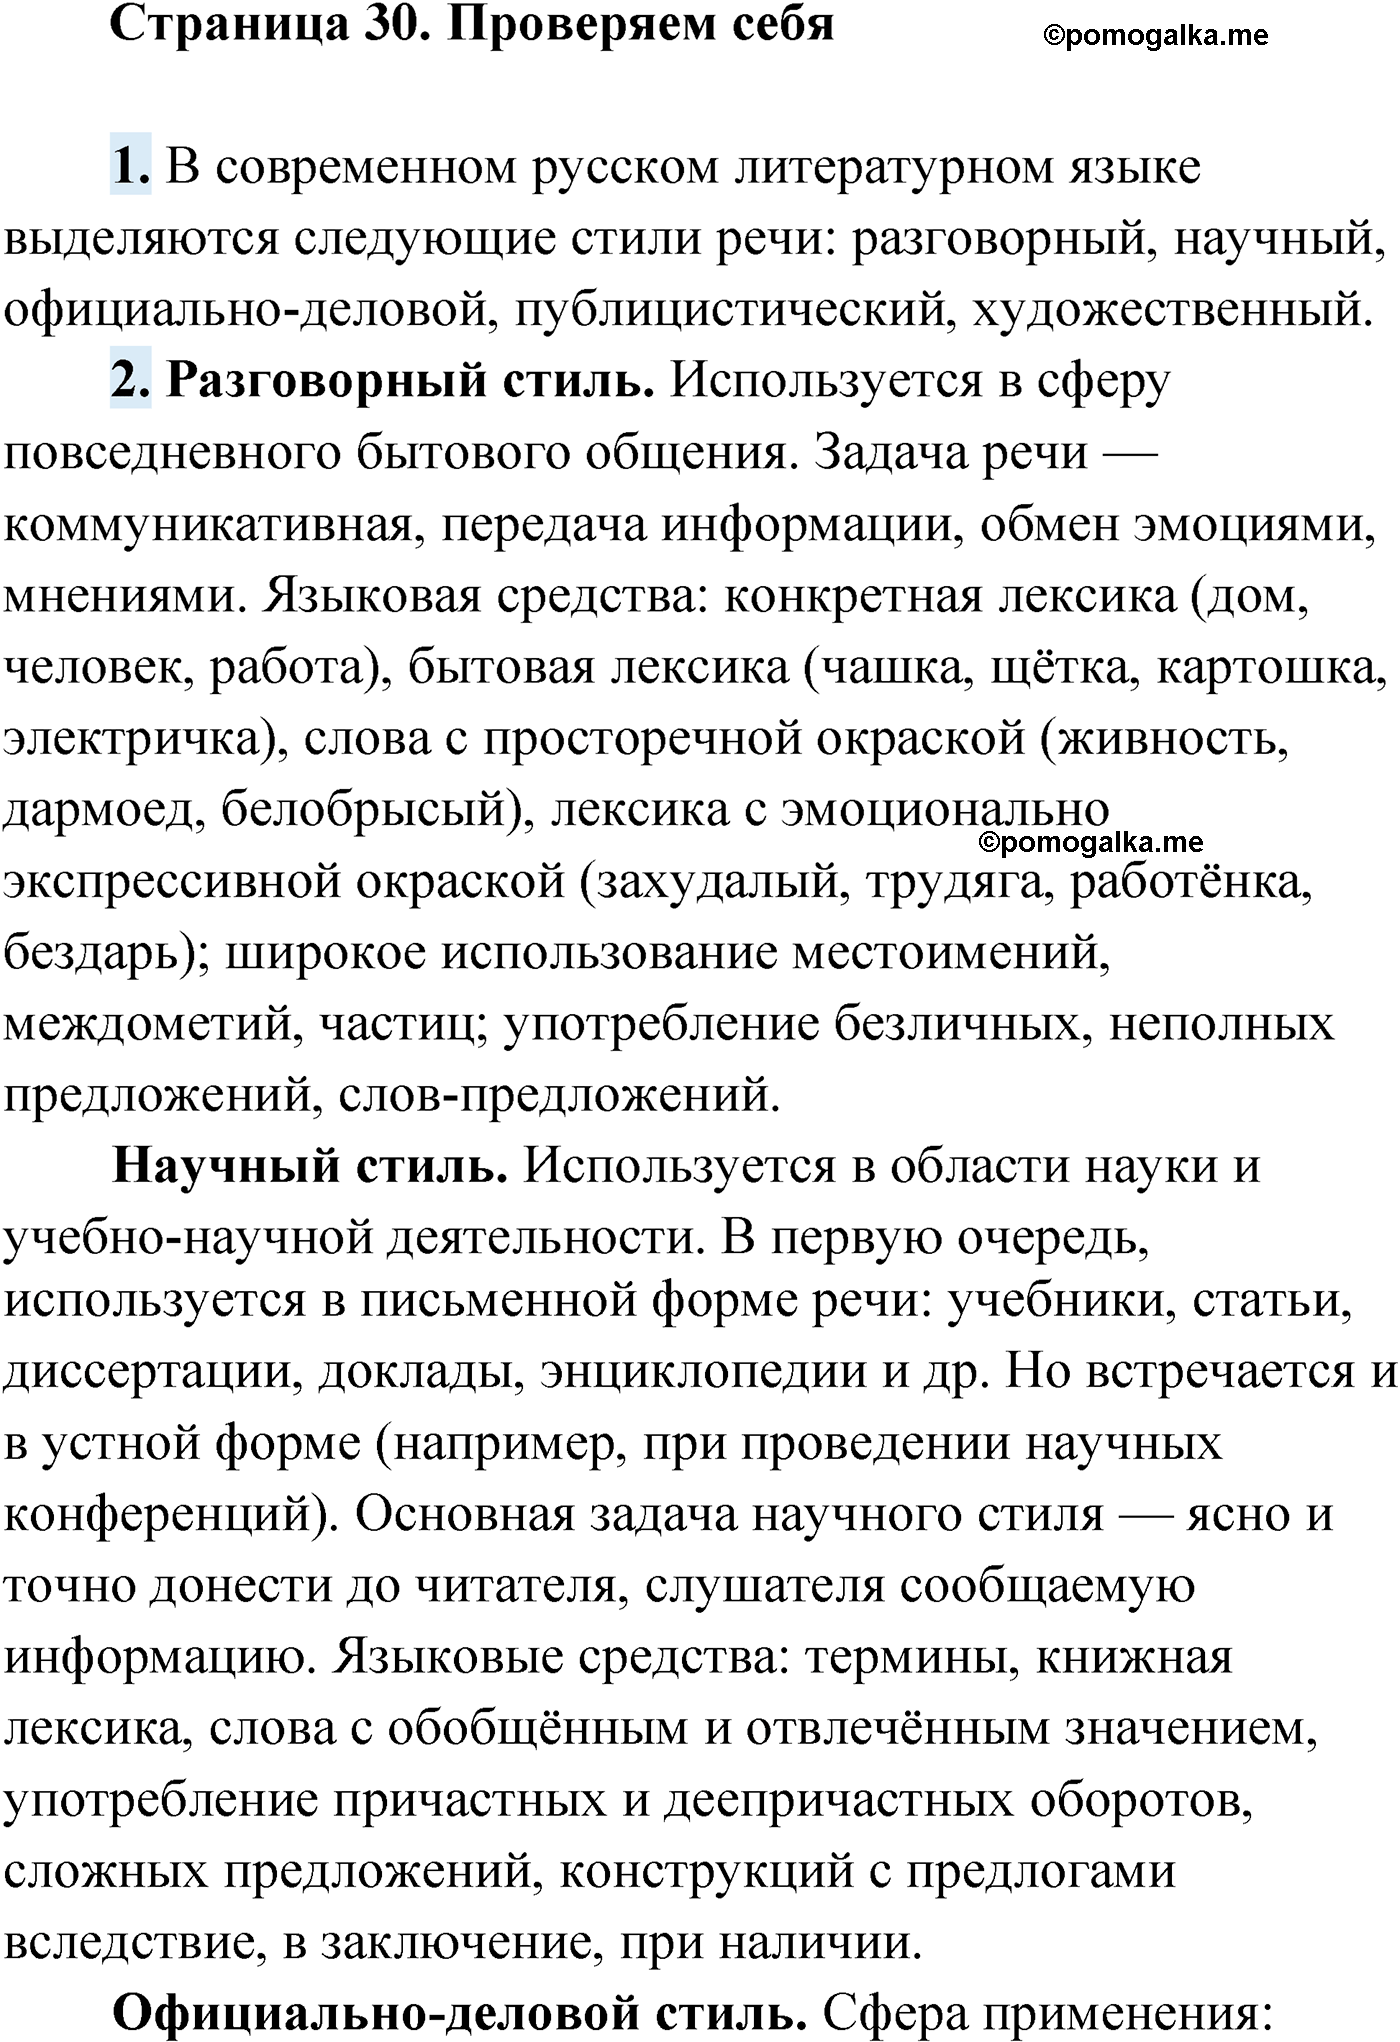 Проверь себя, Страница 30 русский язык 9 класс Мурина 2019 год